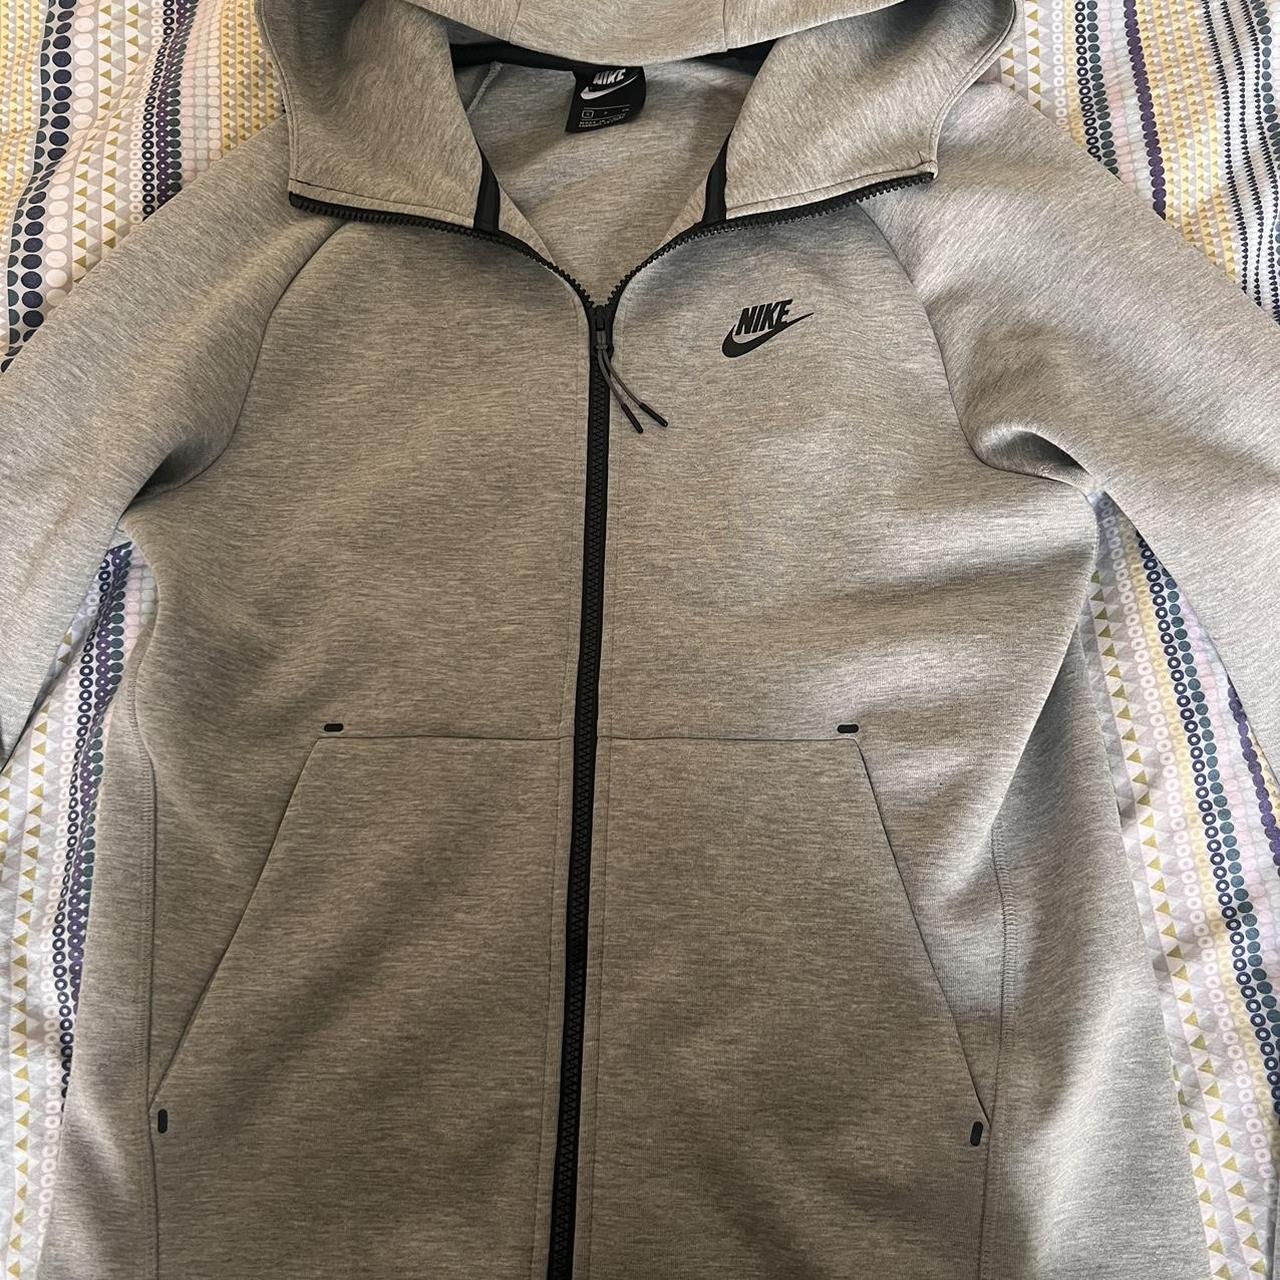 Nike tech fleece grey - old season Hoodie - size... - Depop